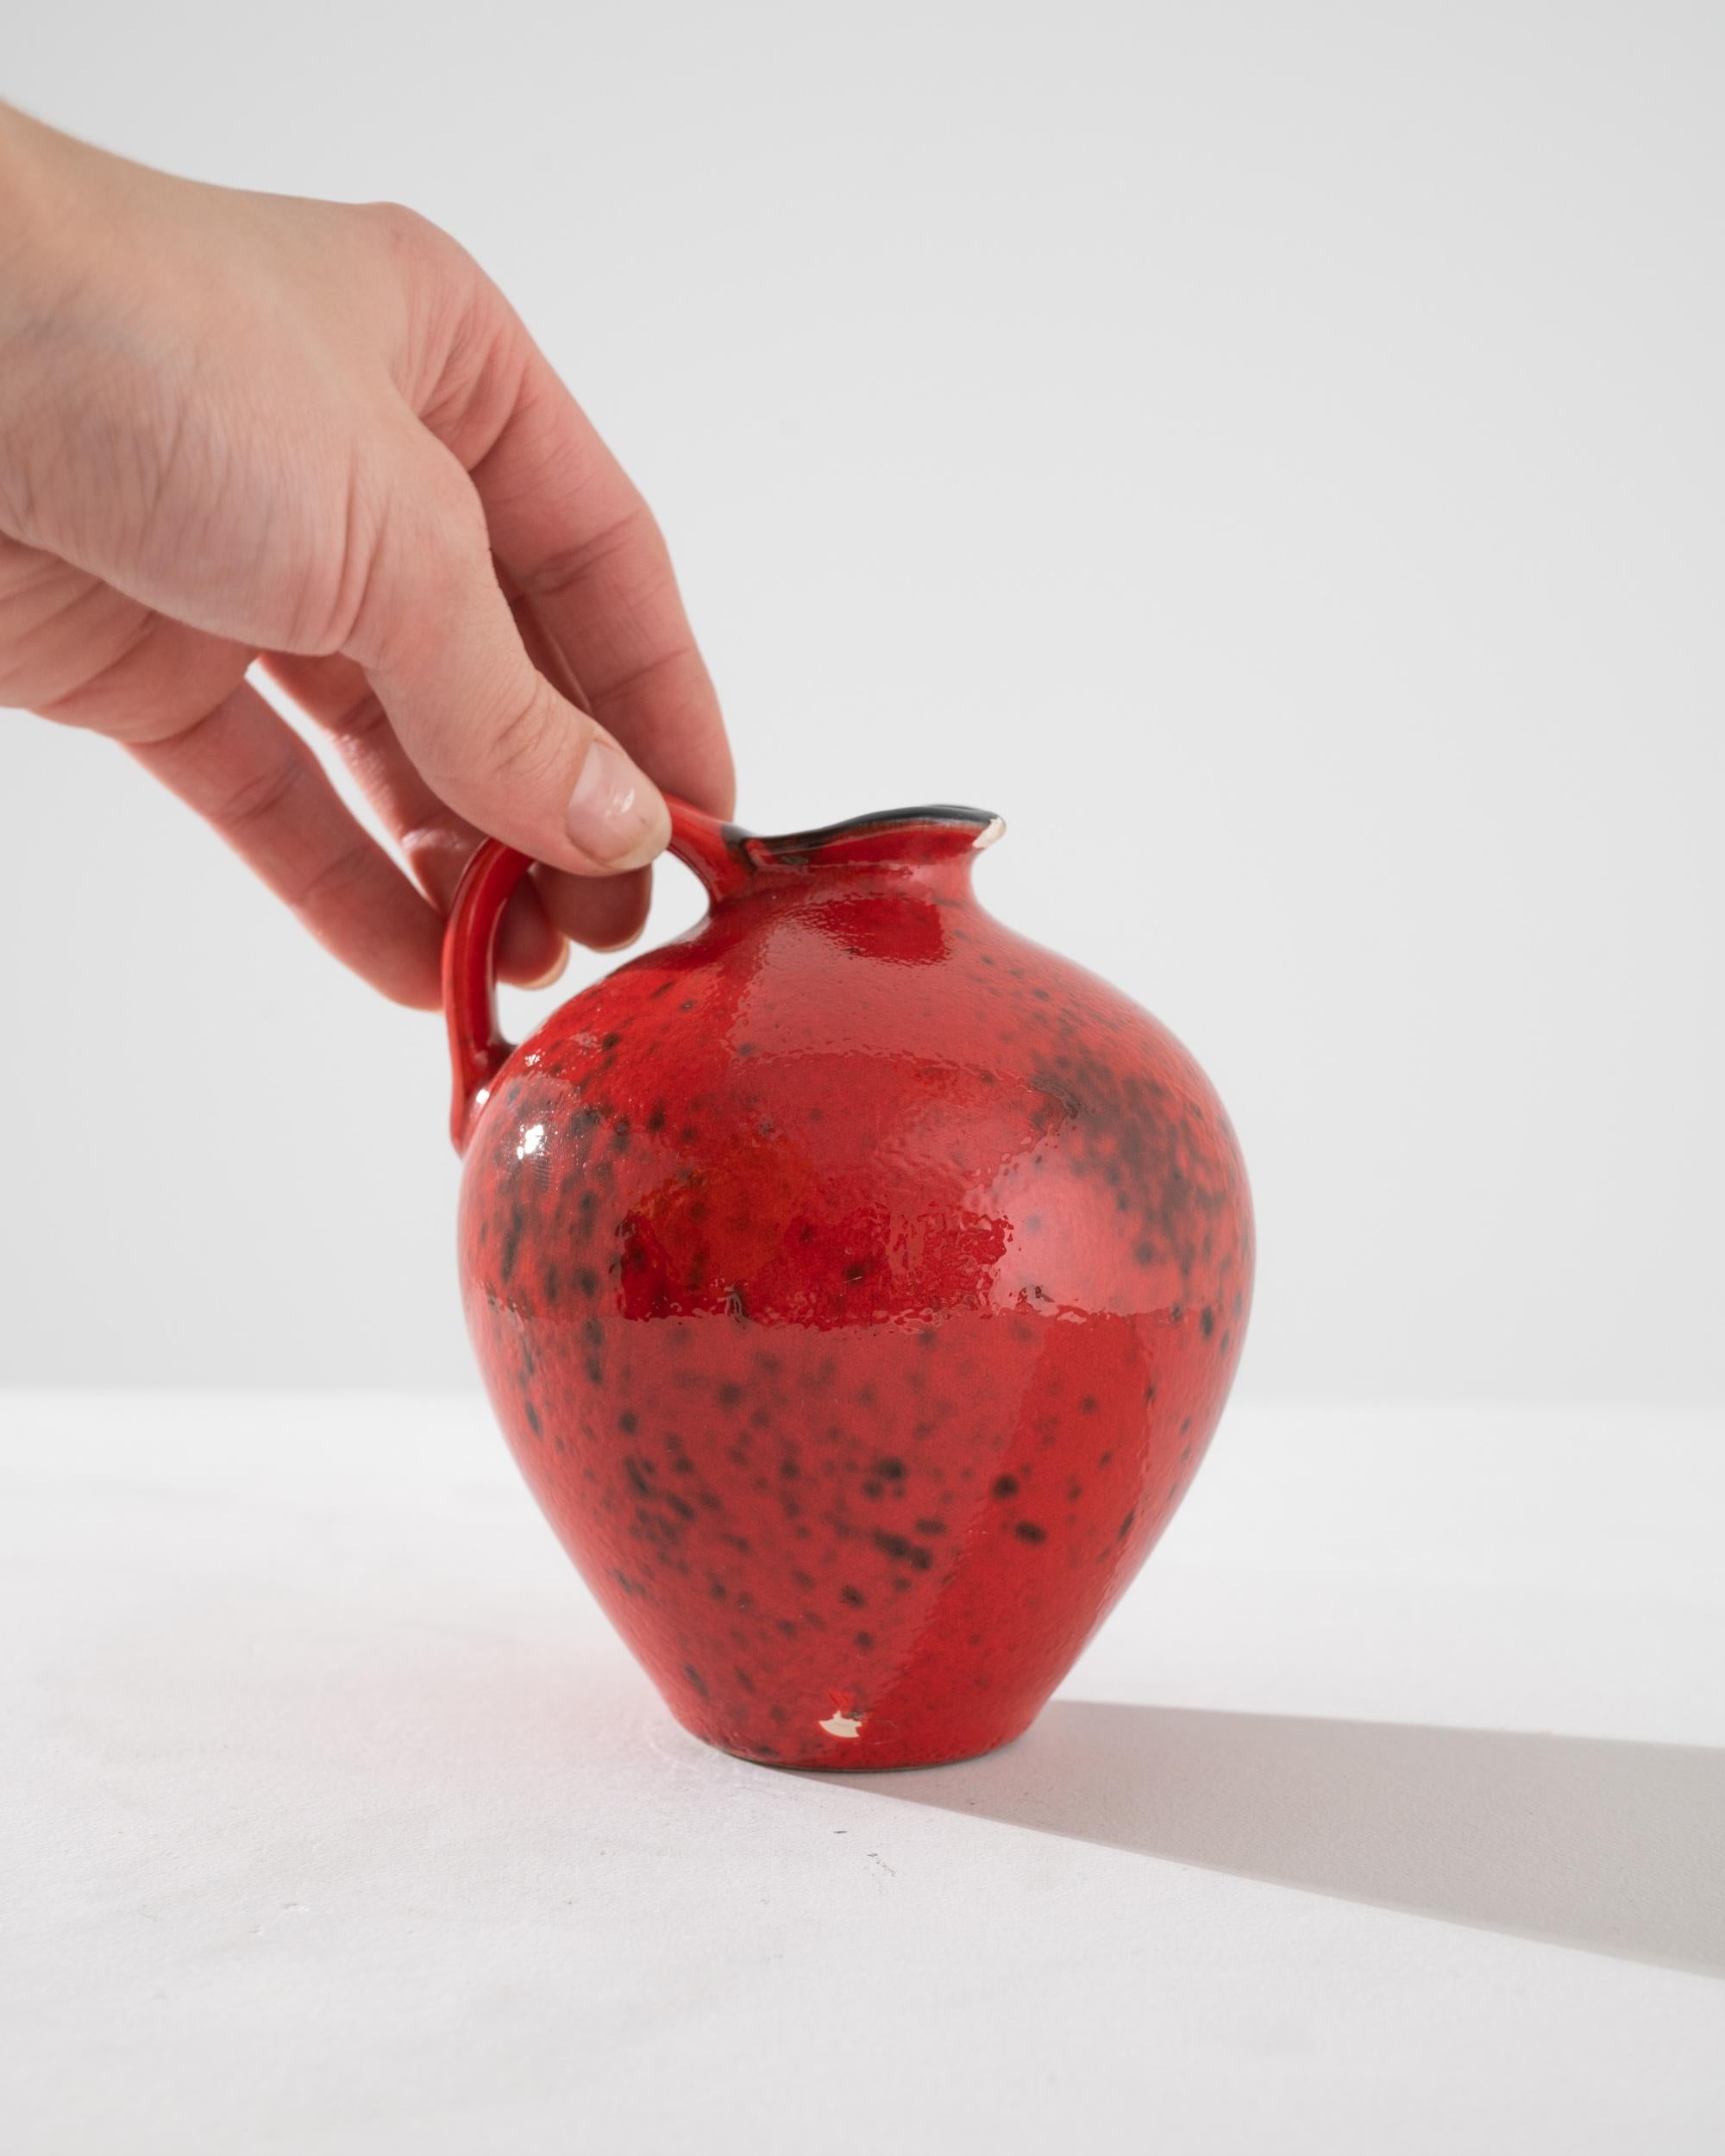 Cette cruche en céramique allemande du XXe siècle est un exemple frappant d'art fonctionnel. Sa glaçure rouge vif, mouchetée d'accents plus sombres, lui confère un aspect volcanique vivant qui attire l'attention tout en étant élégant. La forme